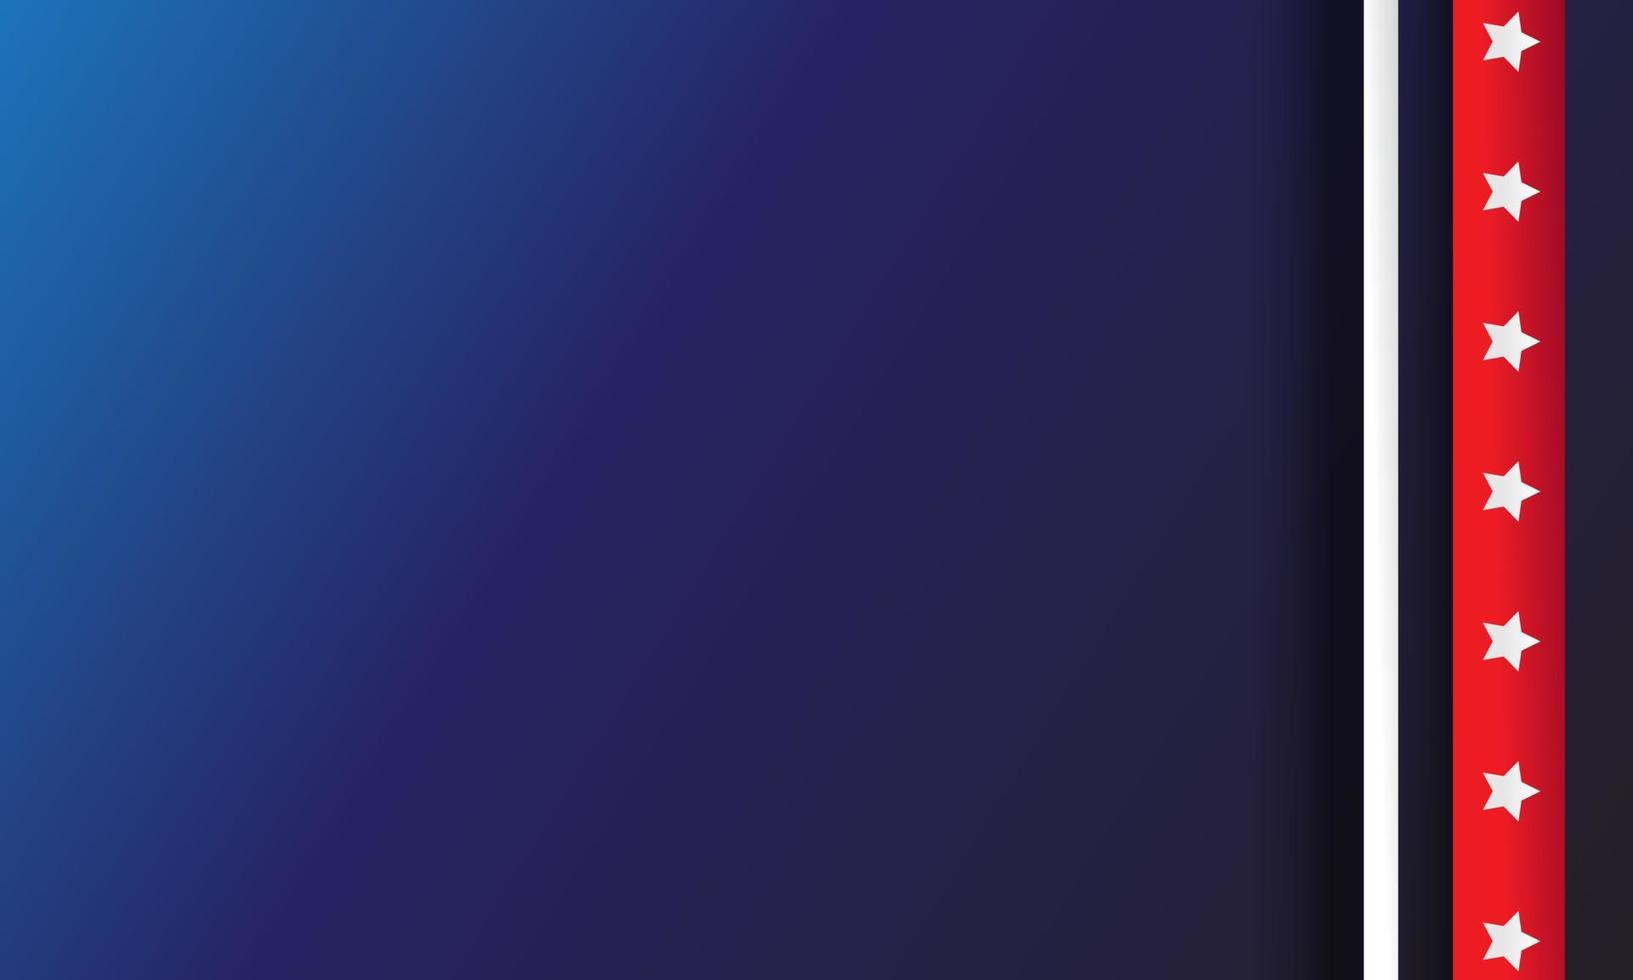 amerikanische usa-flaggenart, sternenbanner, vereinigte staaten von amerika auf blauem hintergrund vektor